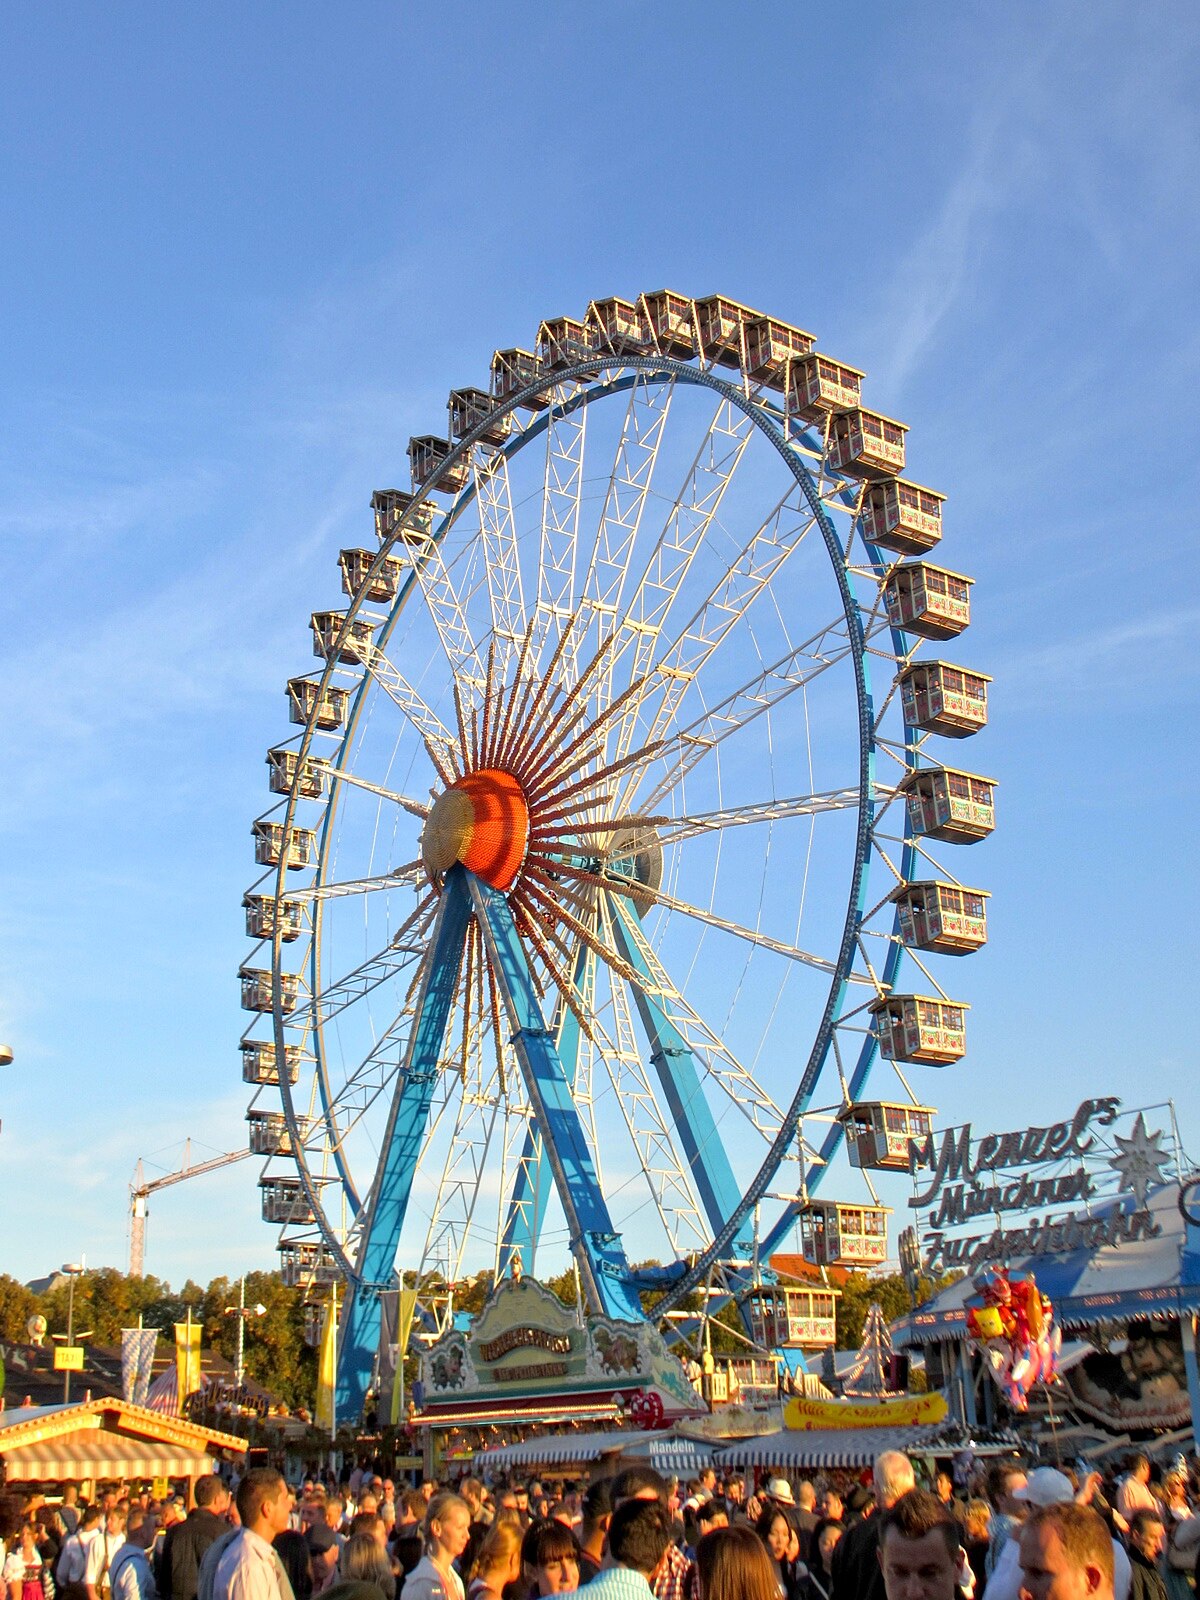 Ferris wheel - Wikidata